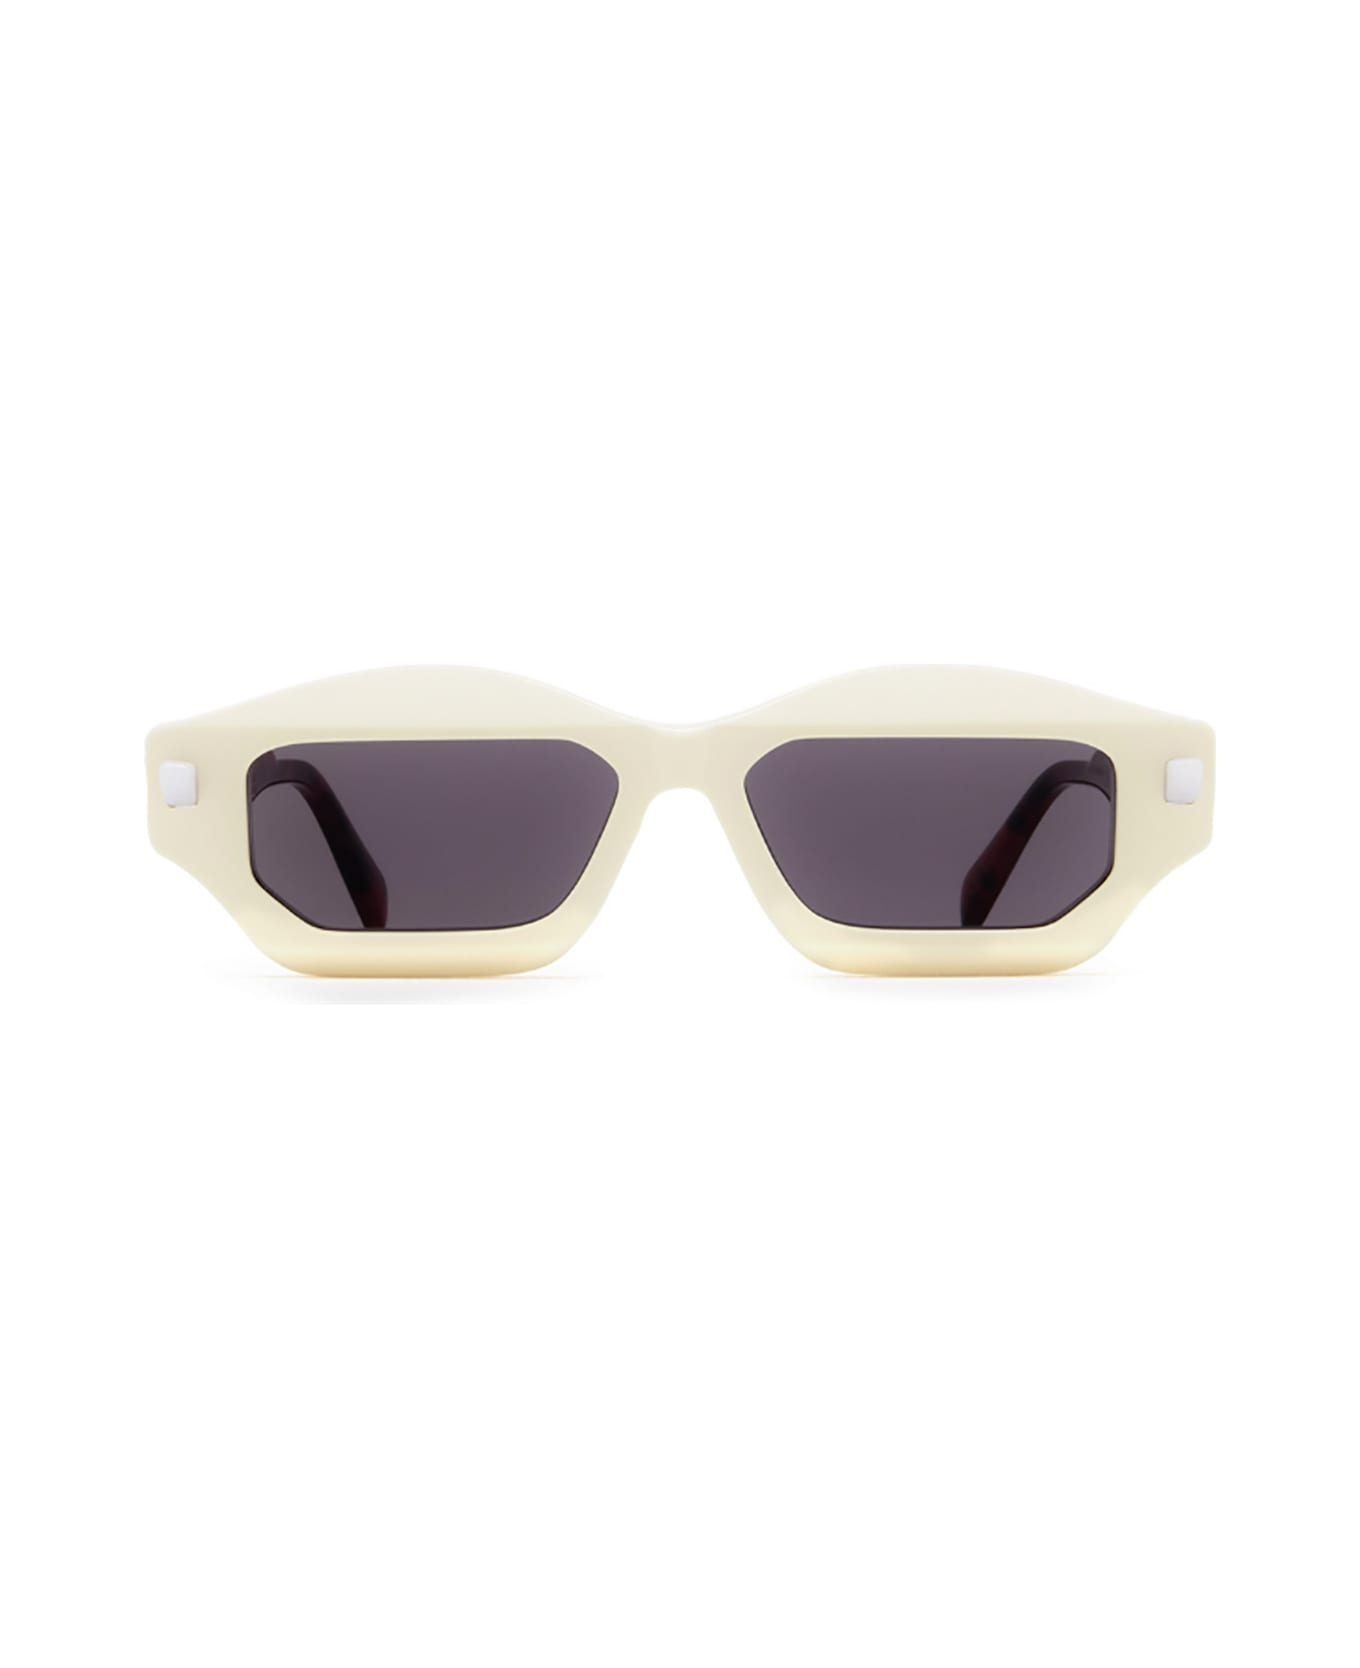 Kuboraum Q6 Sunglasses - Iy サングラス